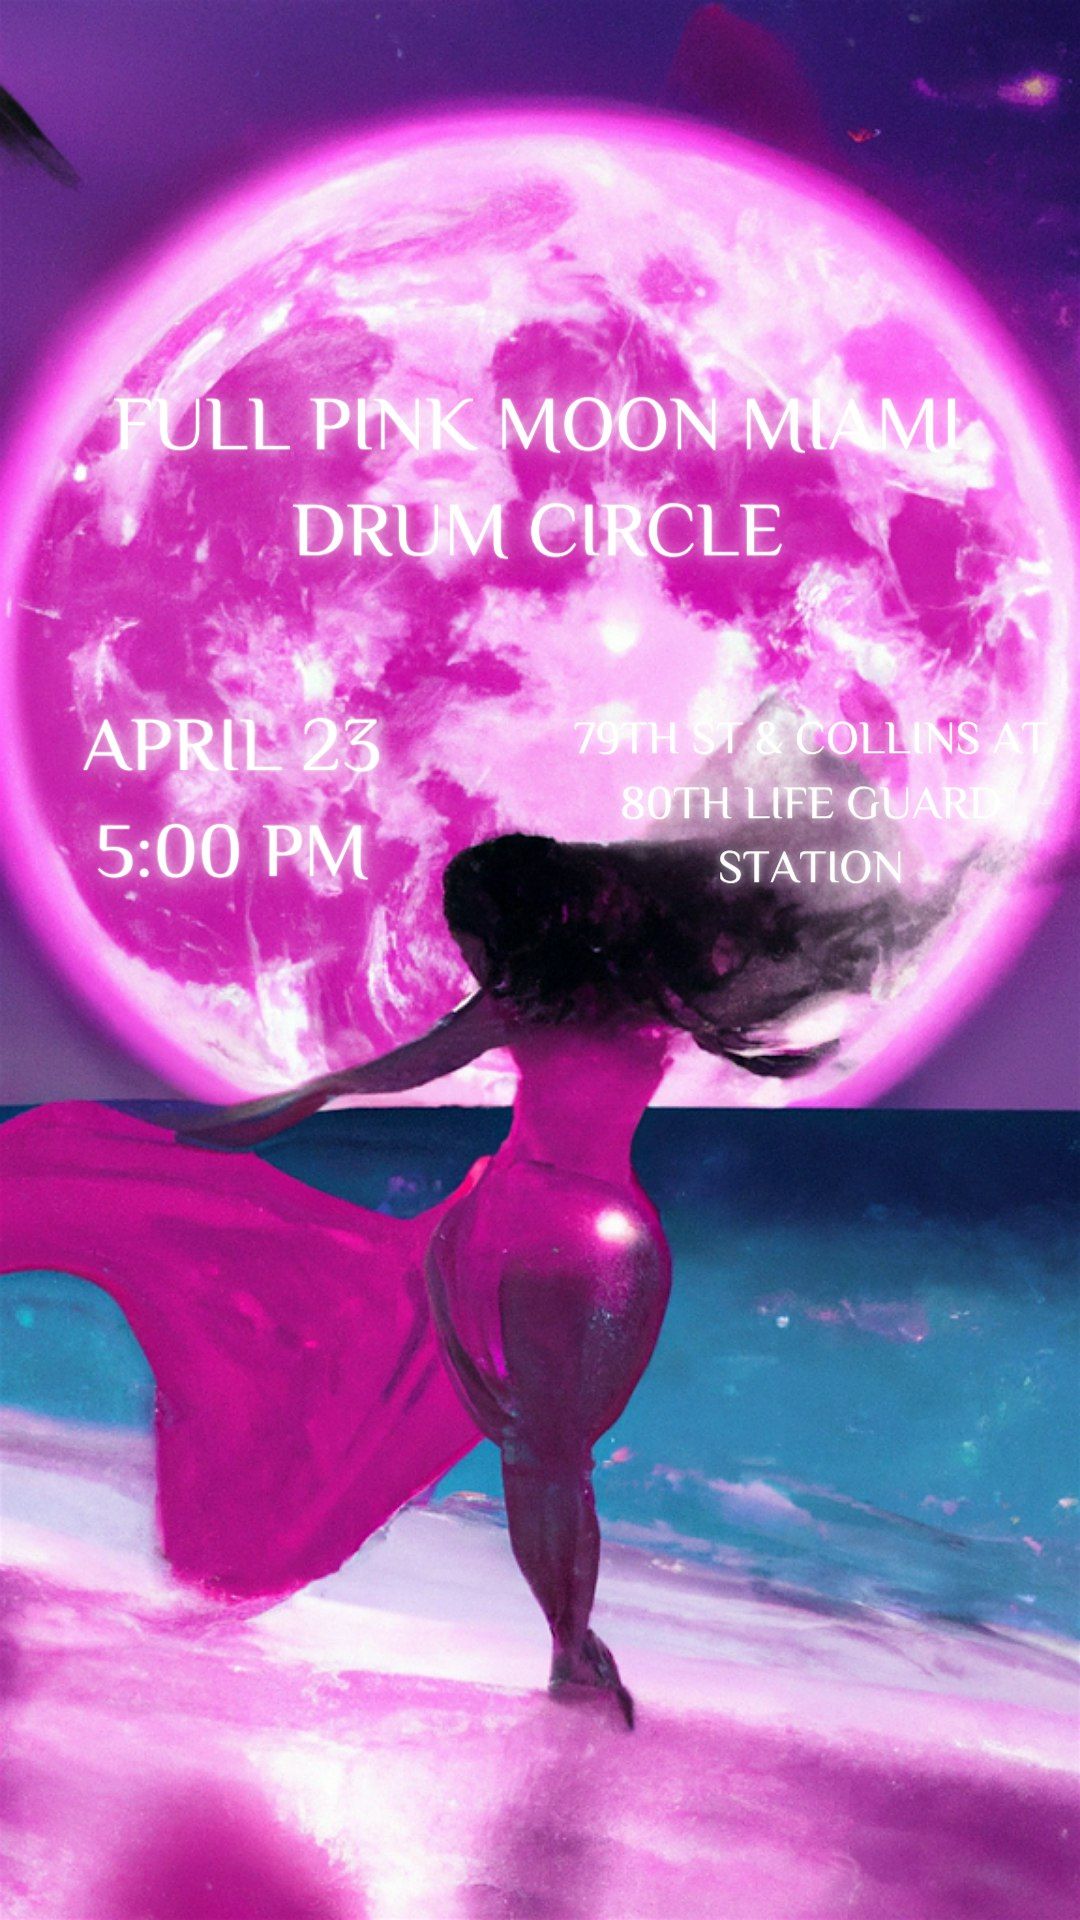 Full Pink Moon Miami Drum Circle at 80th lifeguard 04 \/ 23